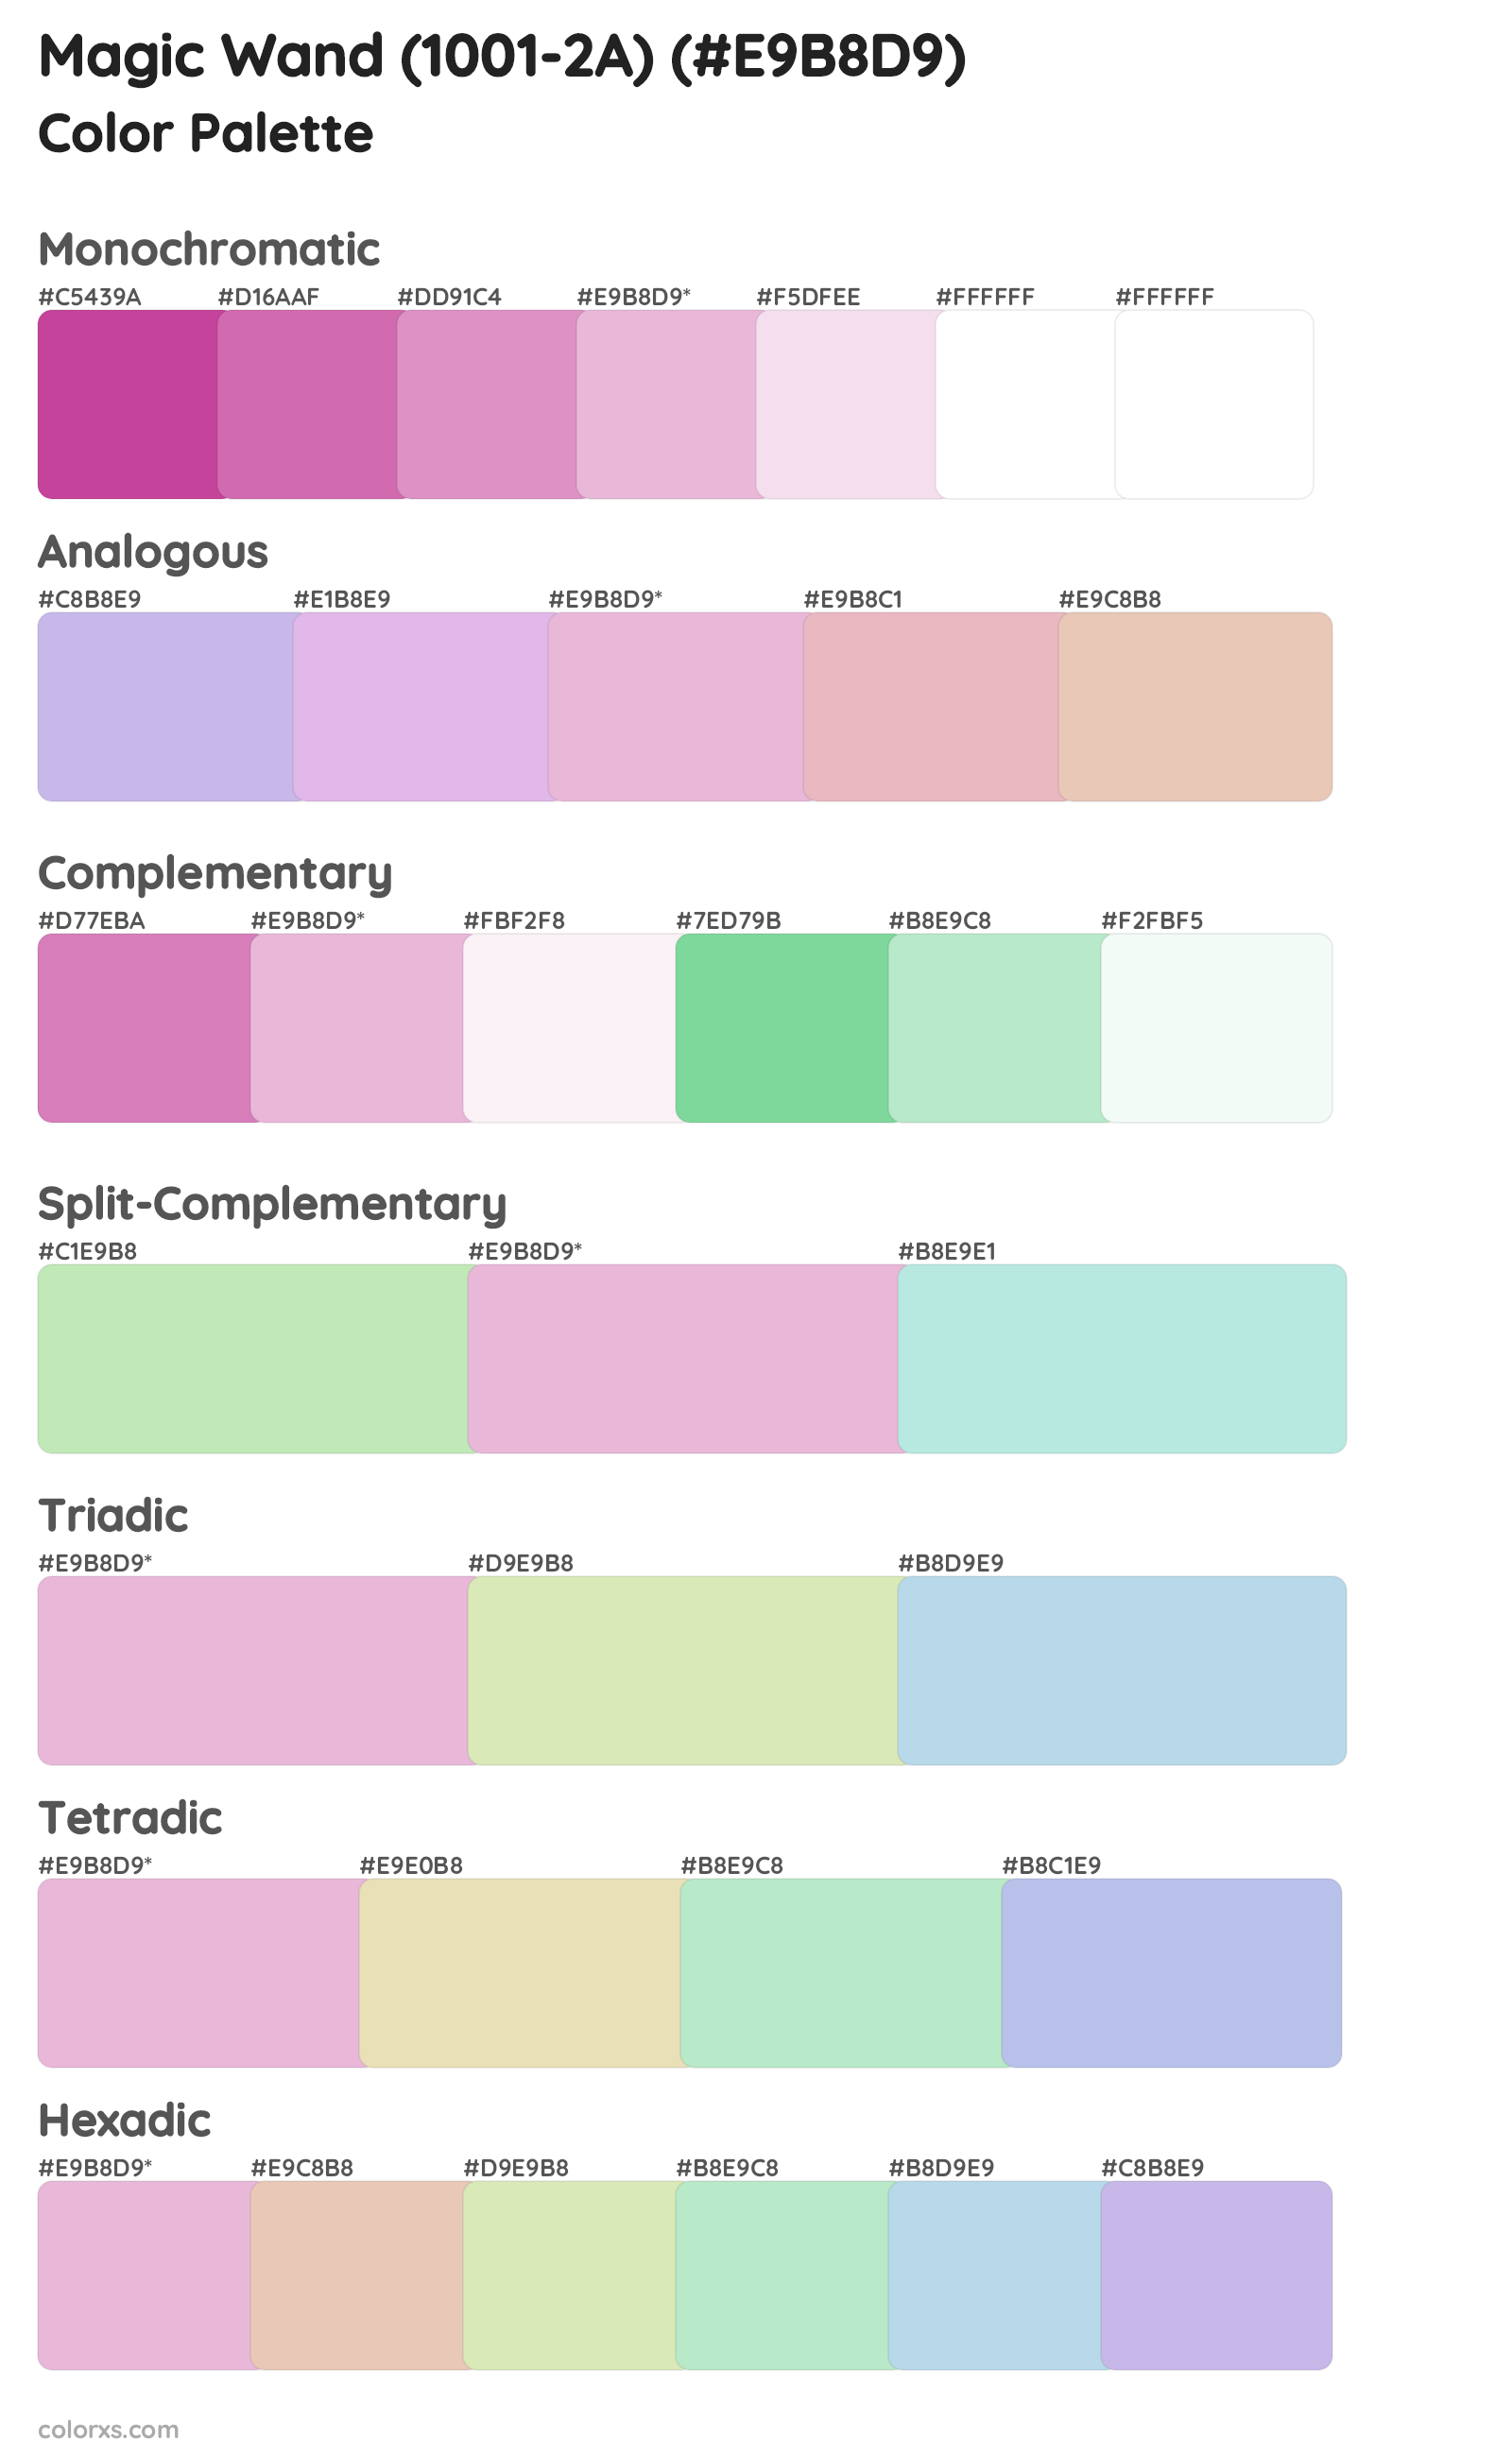 Magic Wand (1001-2A) Color Scheme Palettes